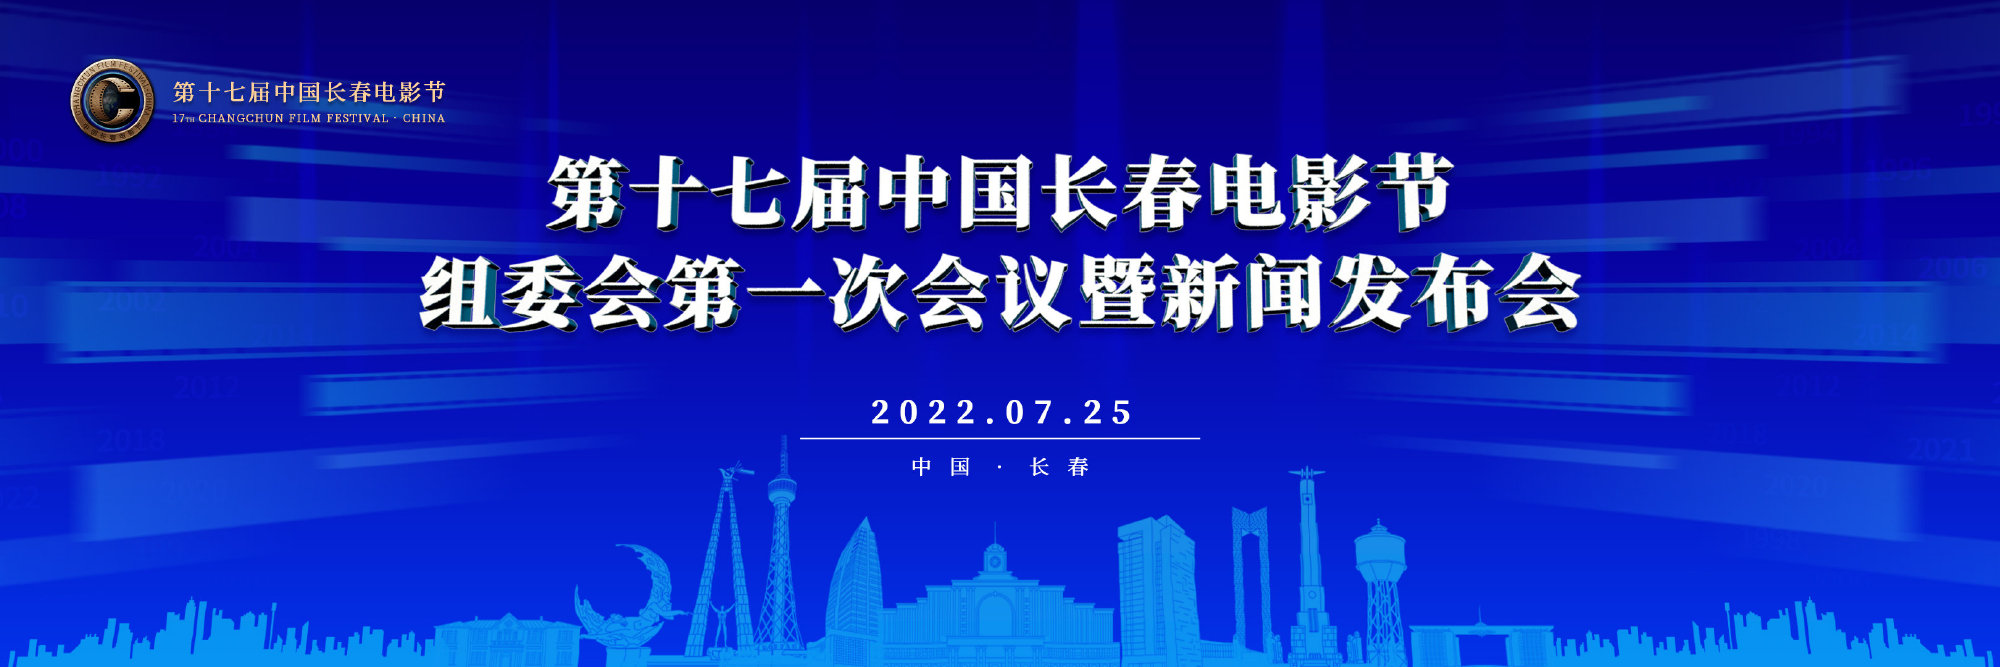 十七届长春电影节8月开幕